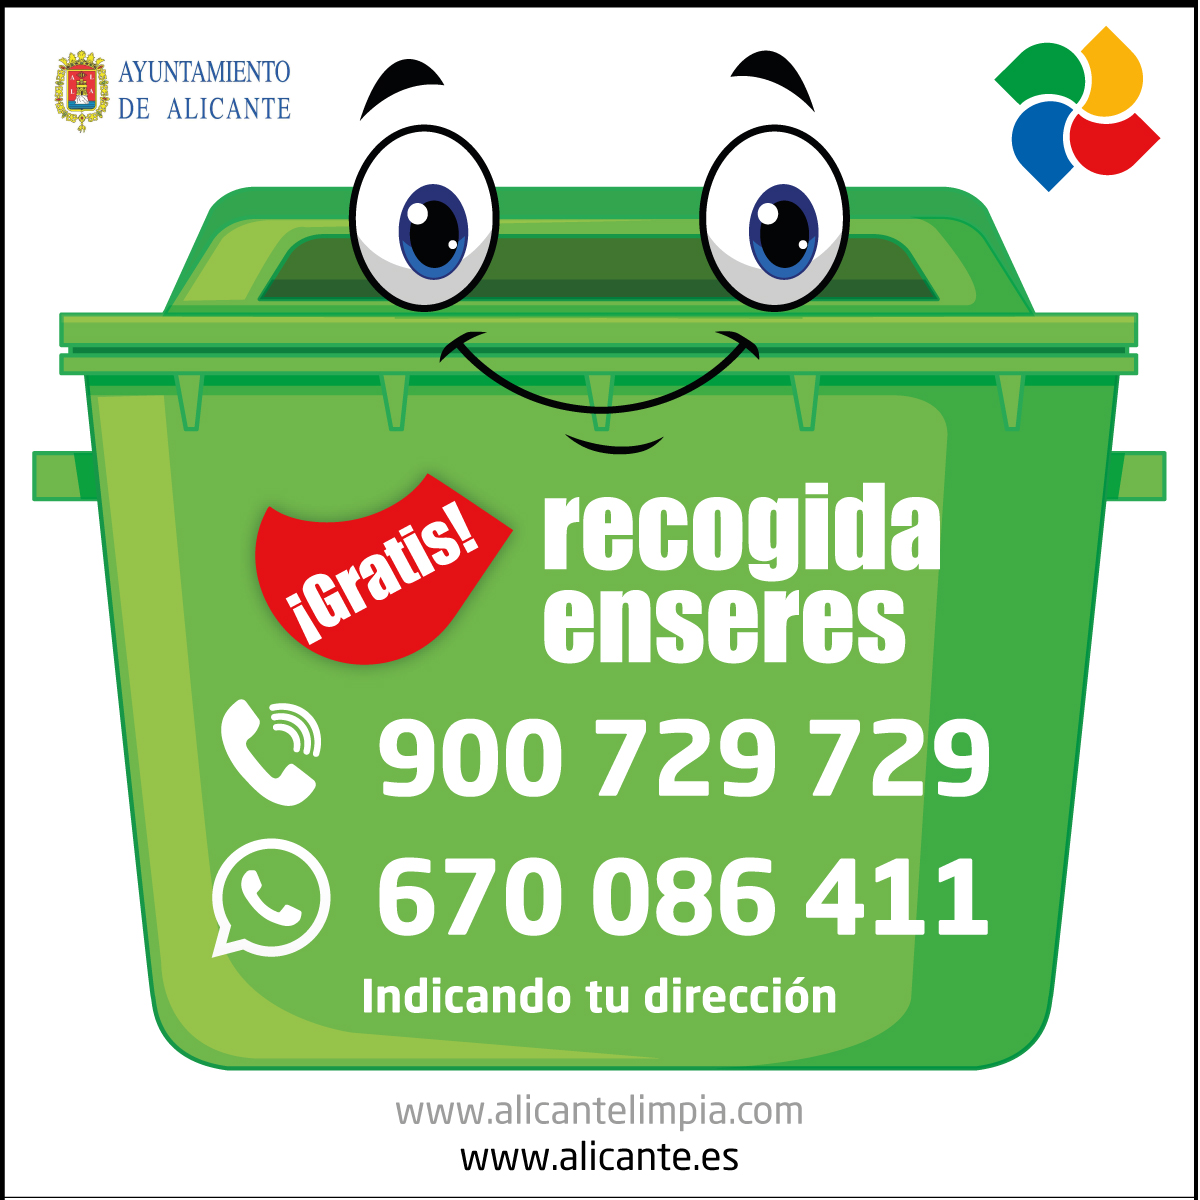 Servicio Gratuito de Recogida de Enseres (Muebles Electrodomésticos) | Ayuntamiento de Alicante